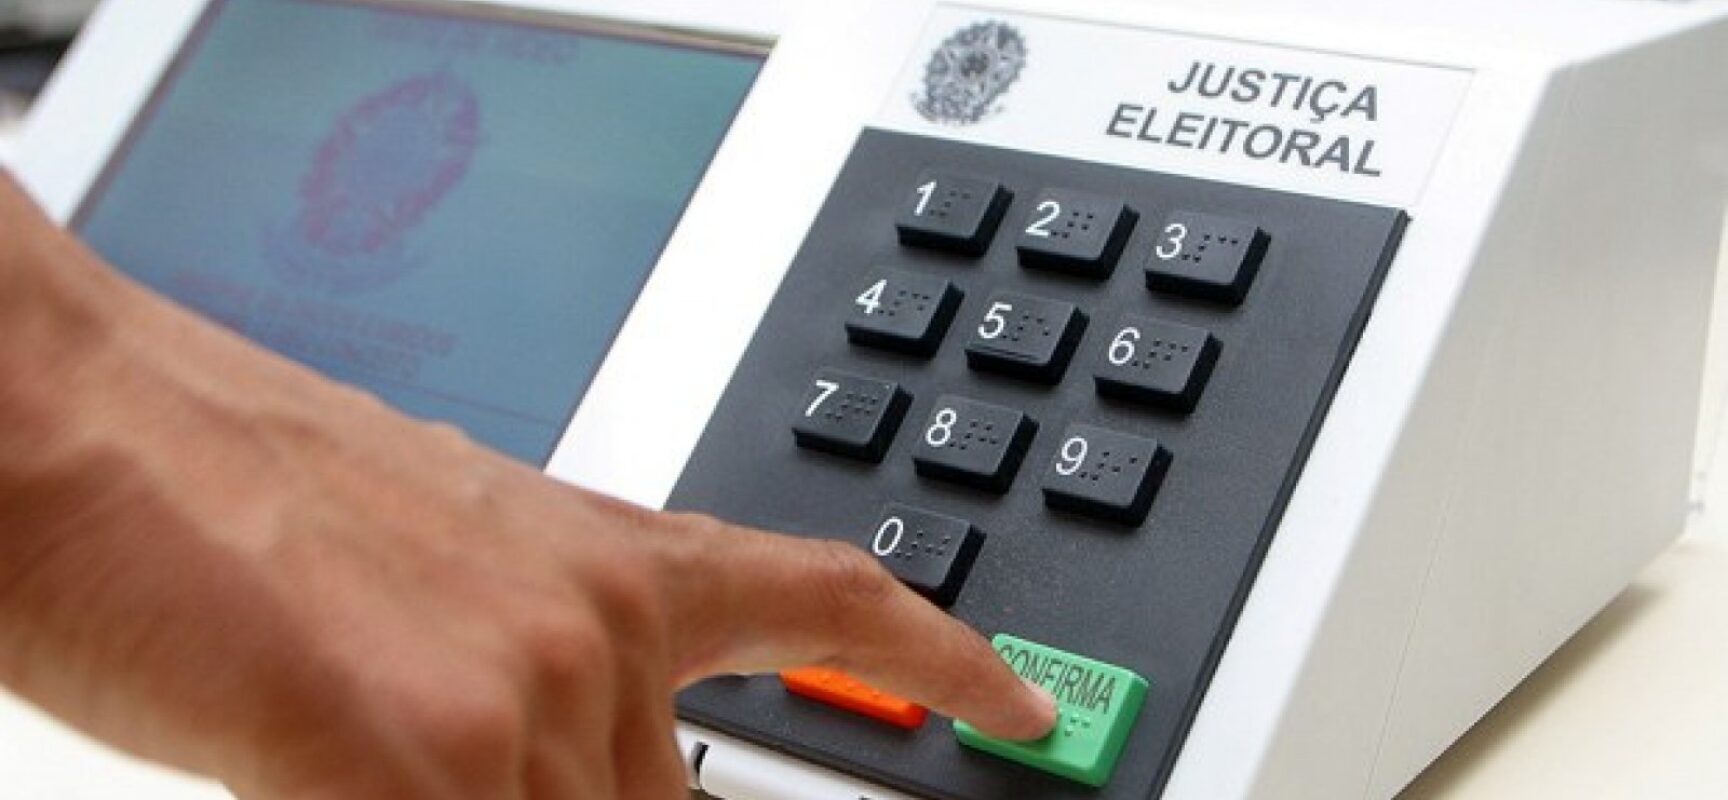 Mais de 23 milhões de eleitores estão aptos a votar voluntariamente